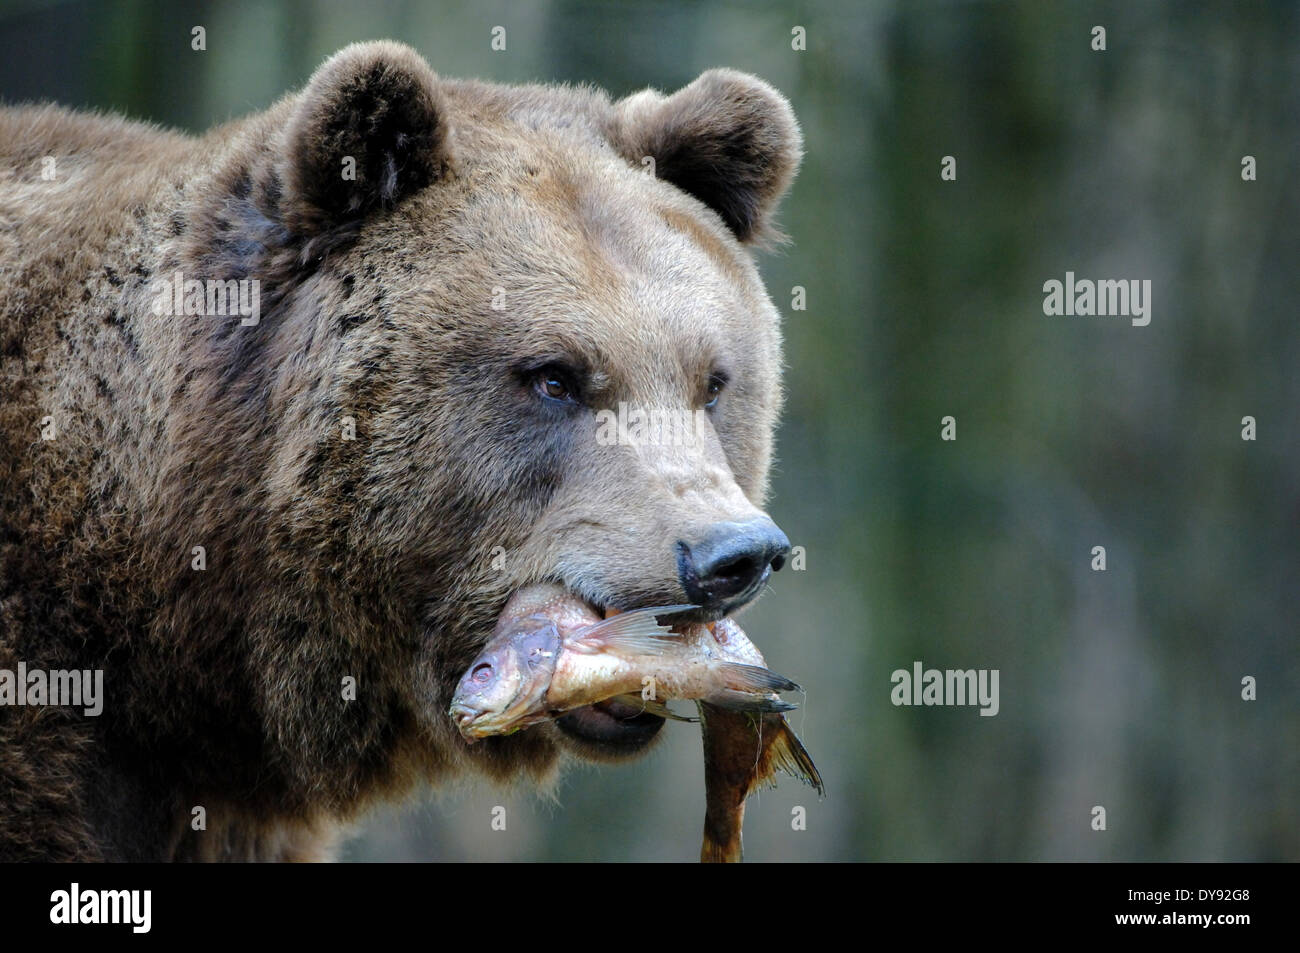 Brown bear, European bear, European brown bear, predator, Ursus arctos, animal, animals, Germany, Europe, Stock Photo